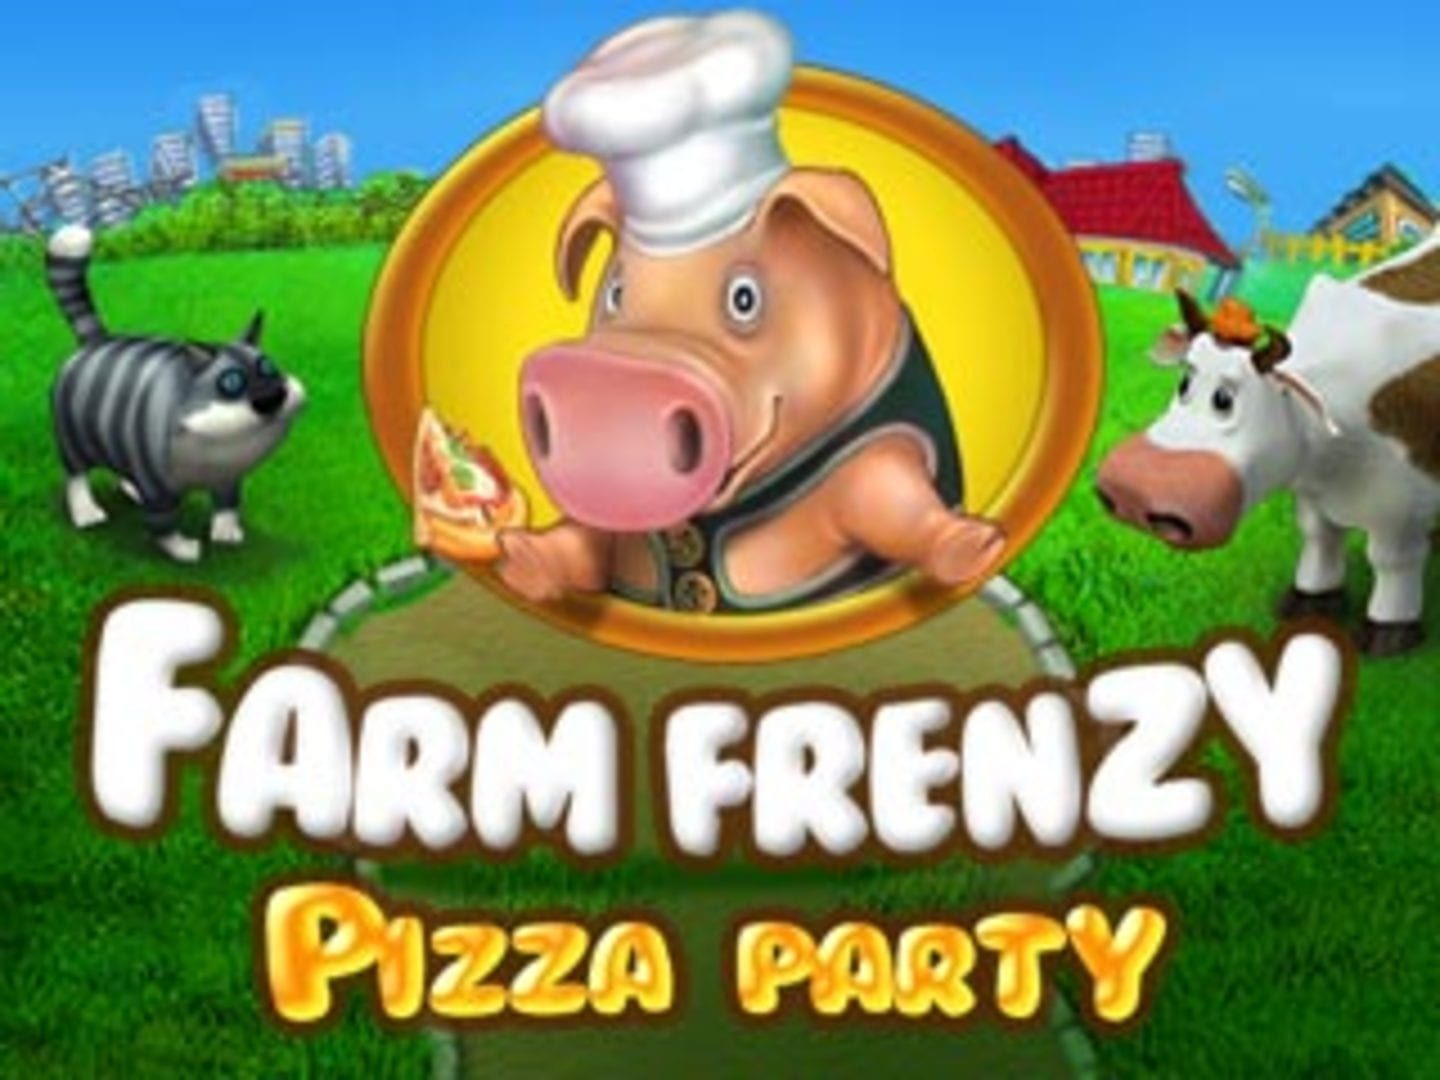 скачать полную версию бесплатно игры веселая ферма печь пиццу фото 72